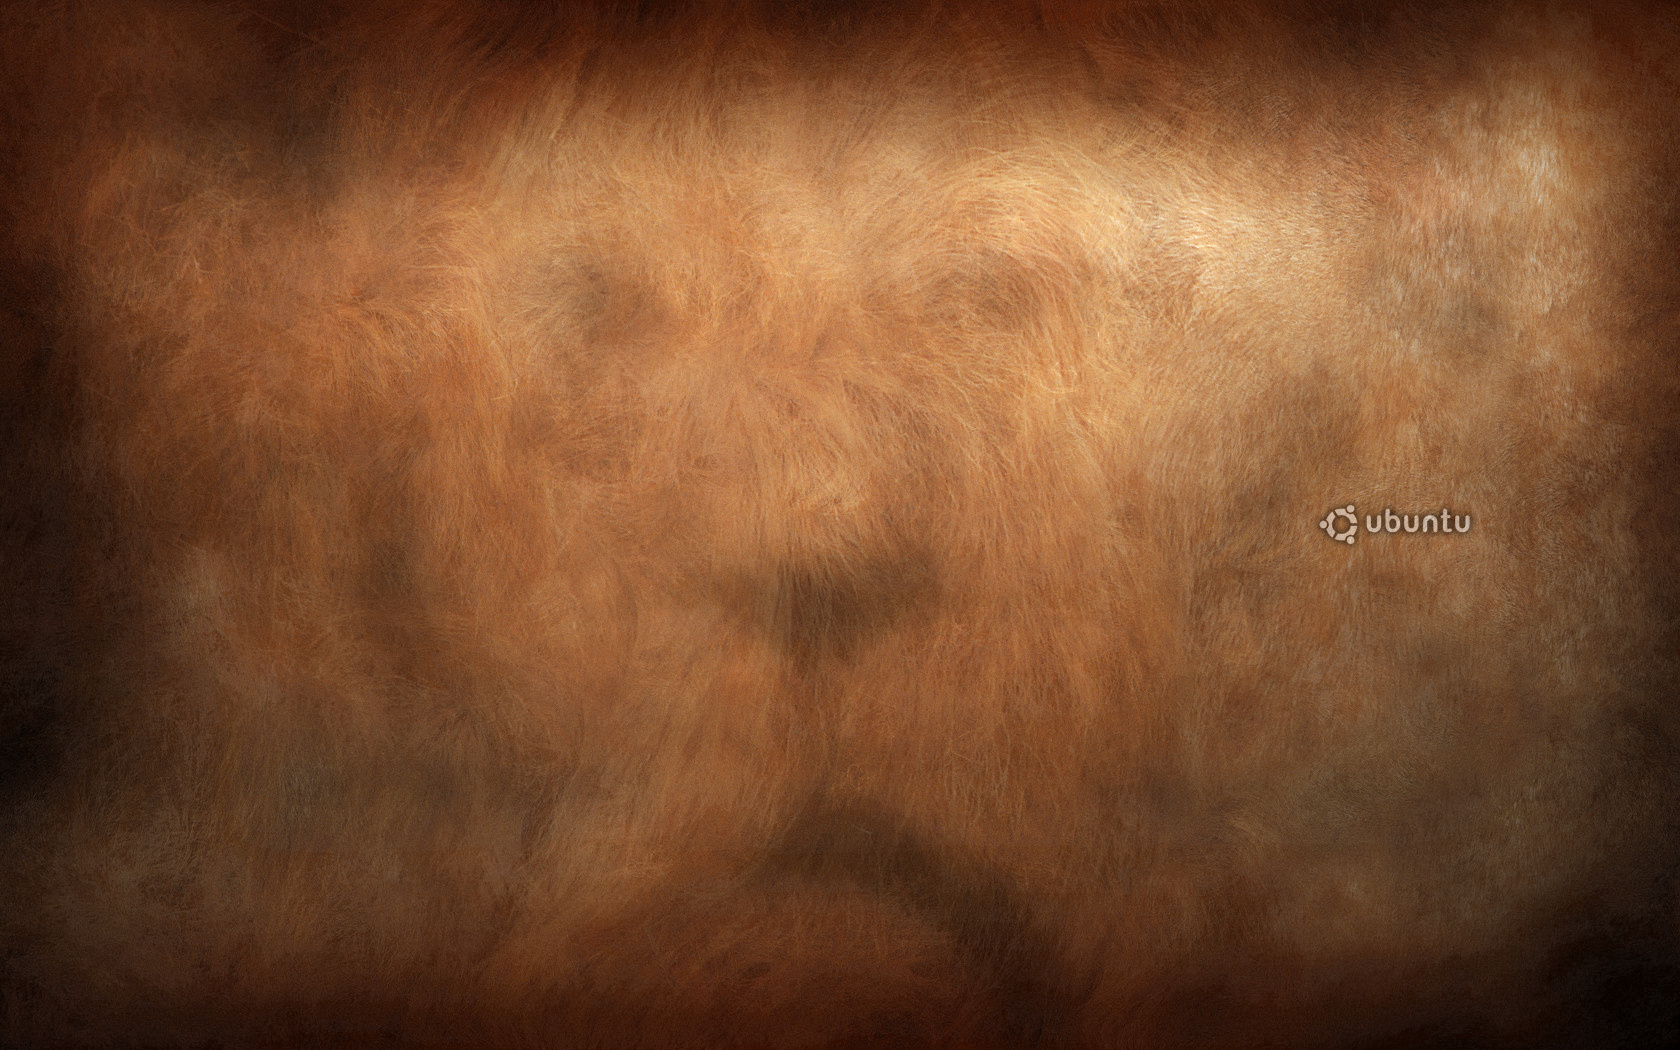 ubuntu-lion-face-1680_2.jpg